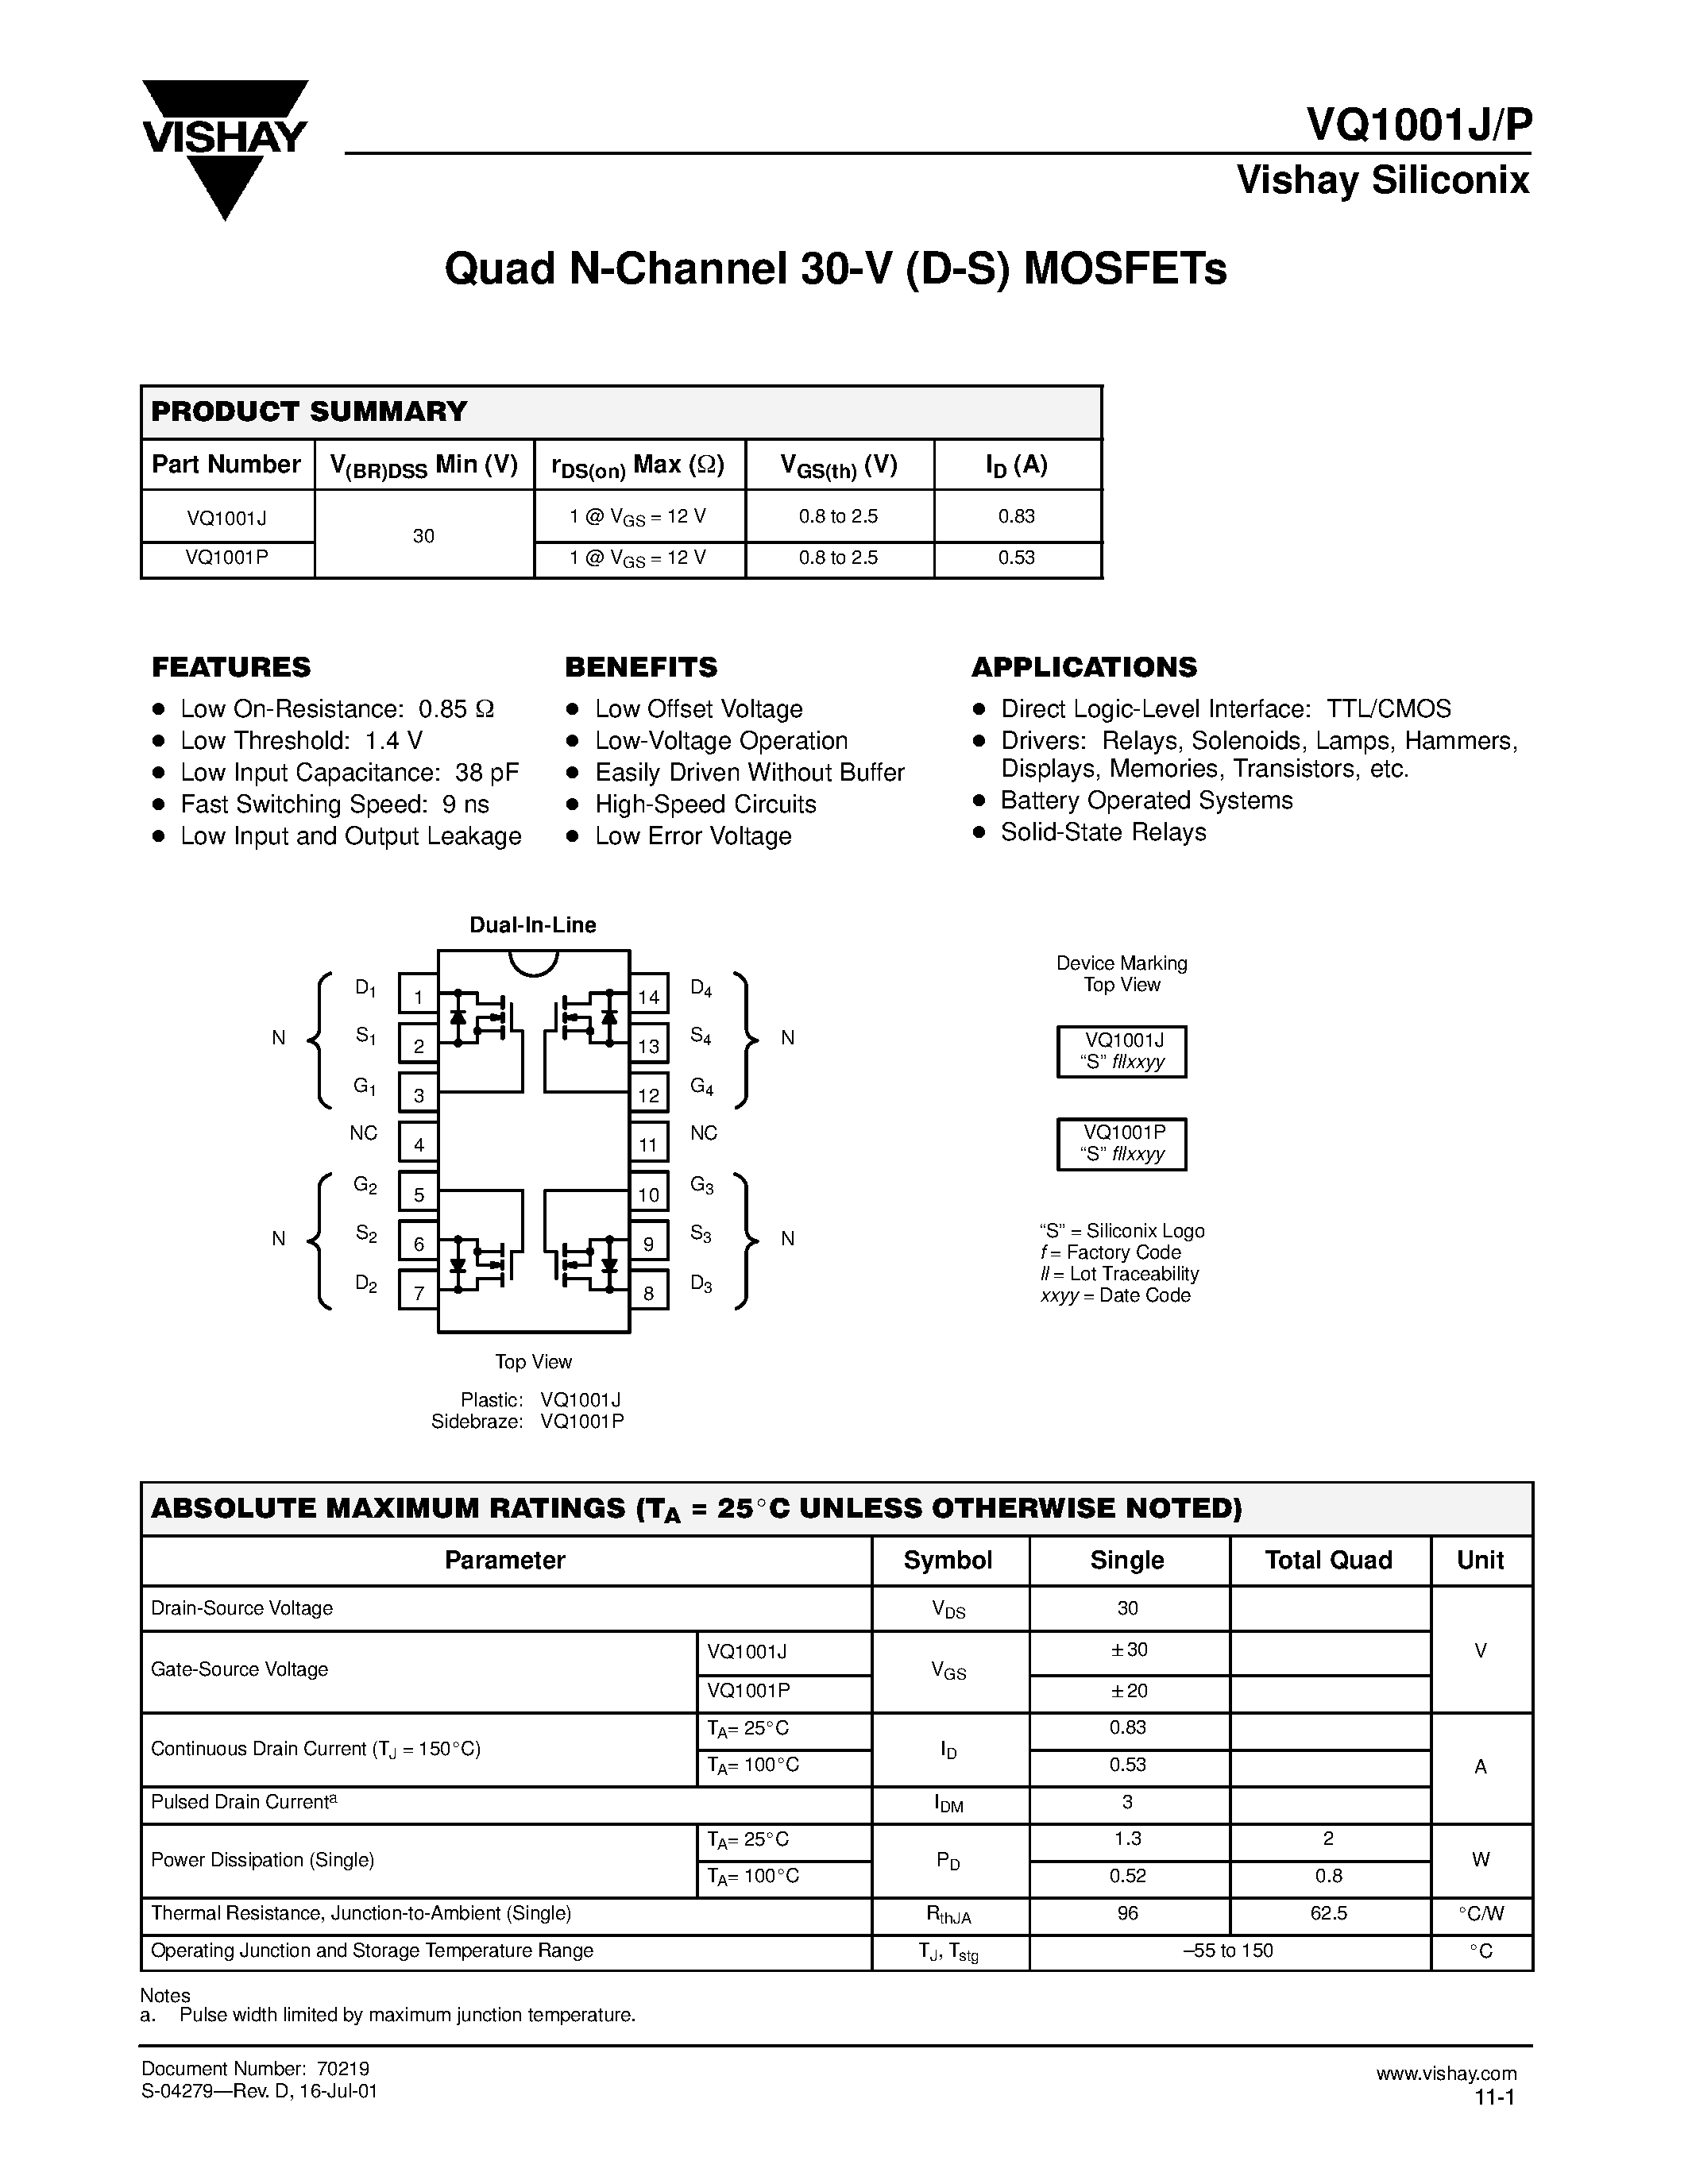 Даташит VQ1001J - Quad N-Channel 30-V (D-S) MOSFETs страница 1